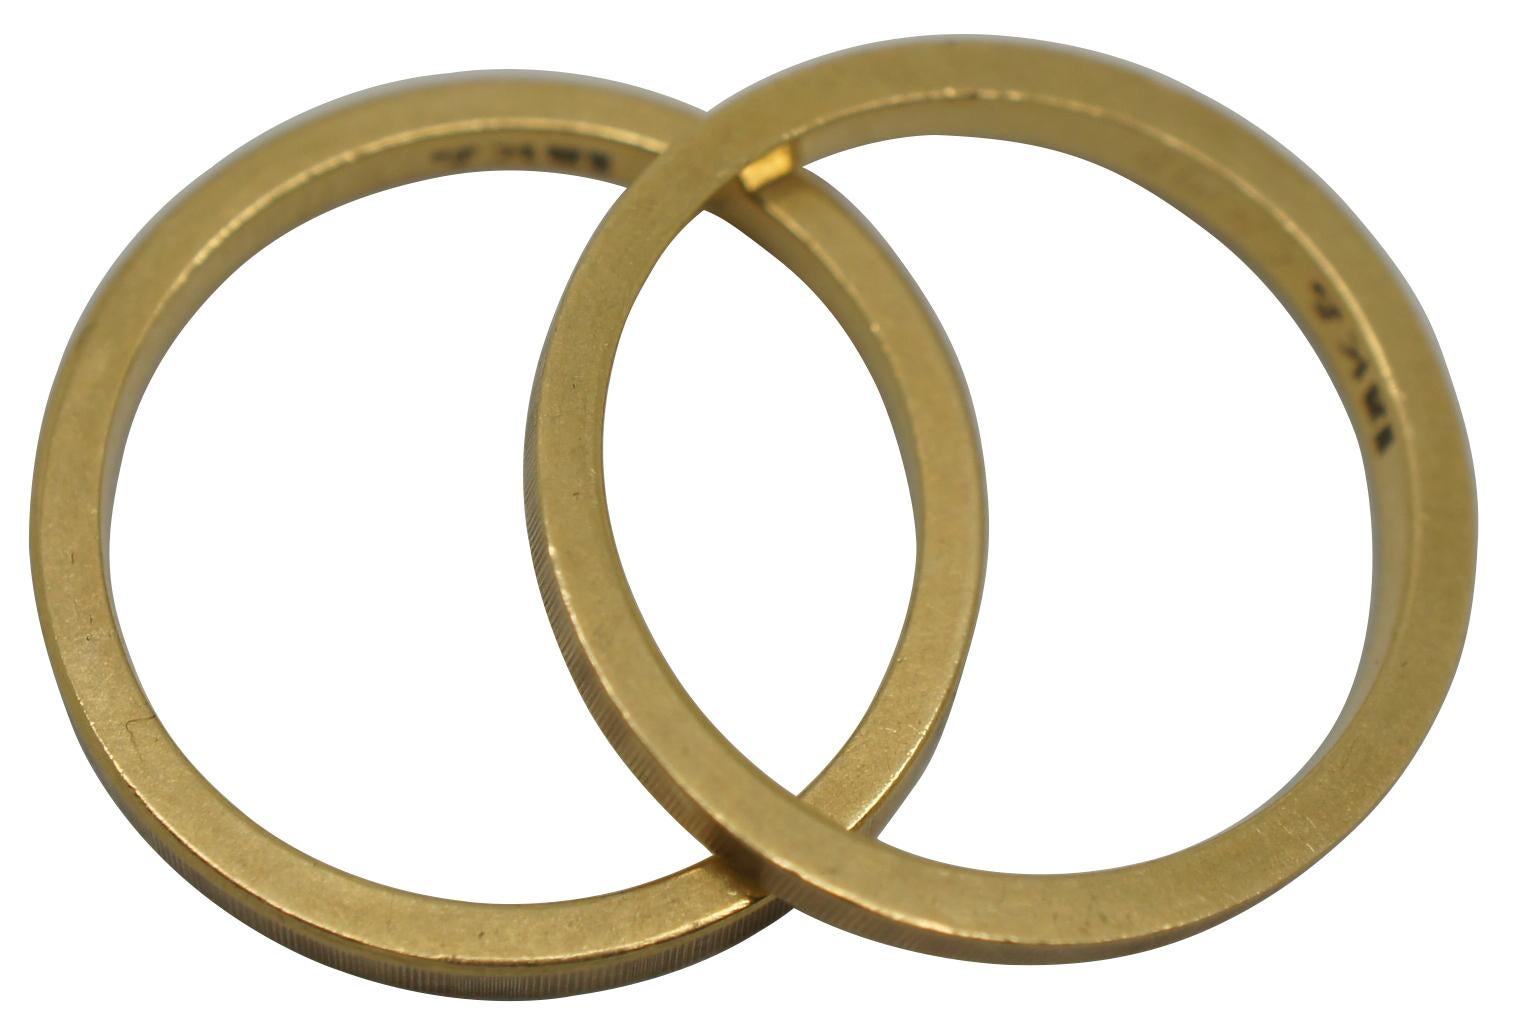 4 inch wood rings